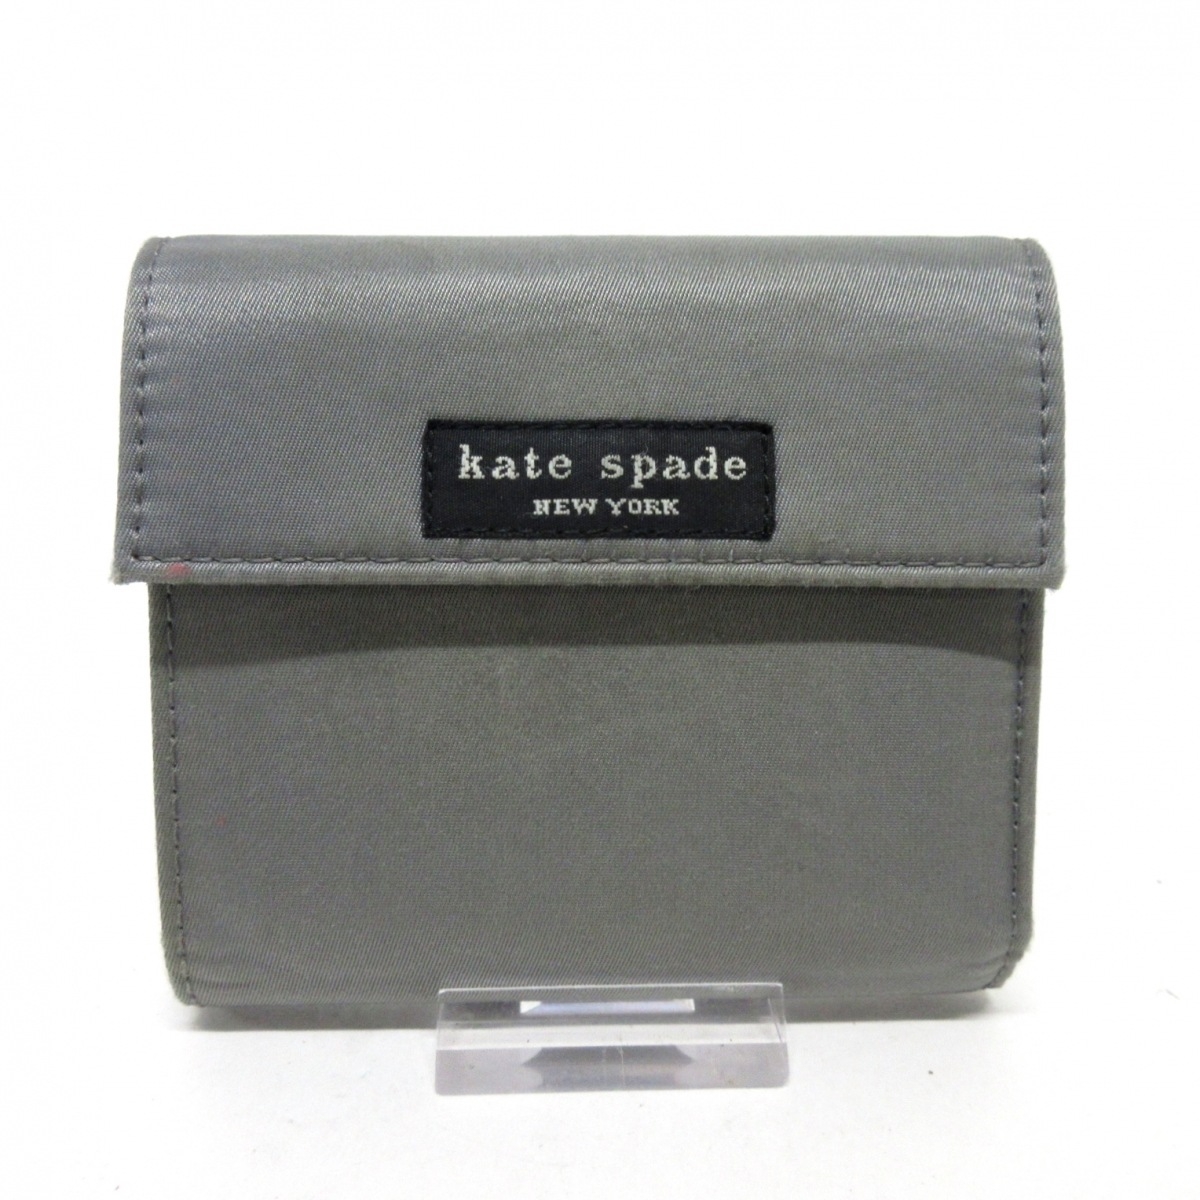 Kate spade(ケイトスペード) 3つ折り財布 カーキ ナイロン